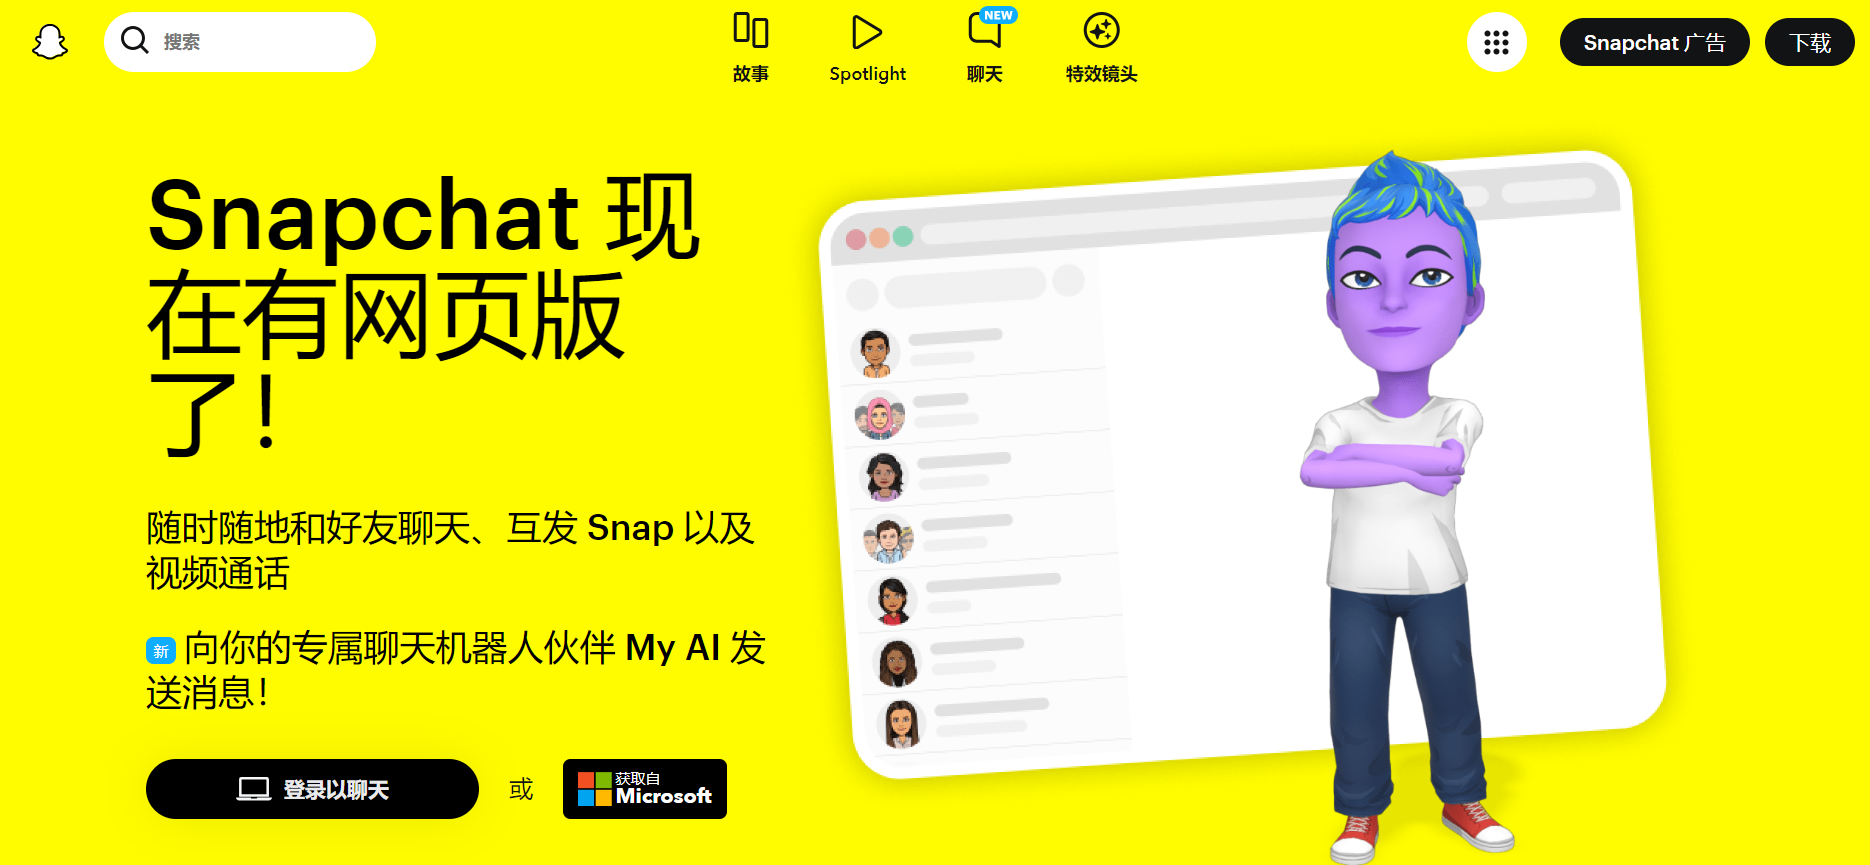 Snapchat官网封面图